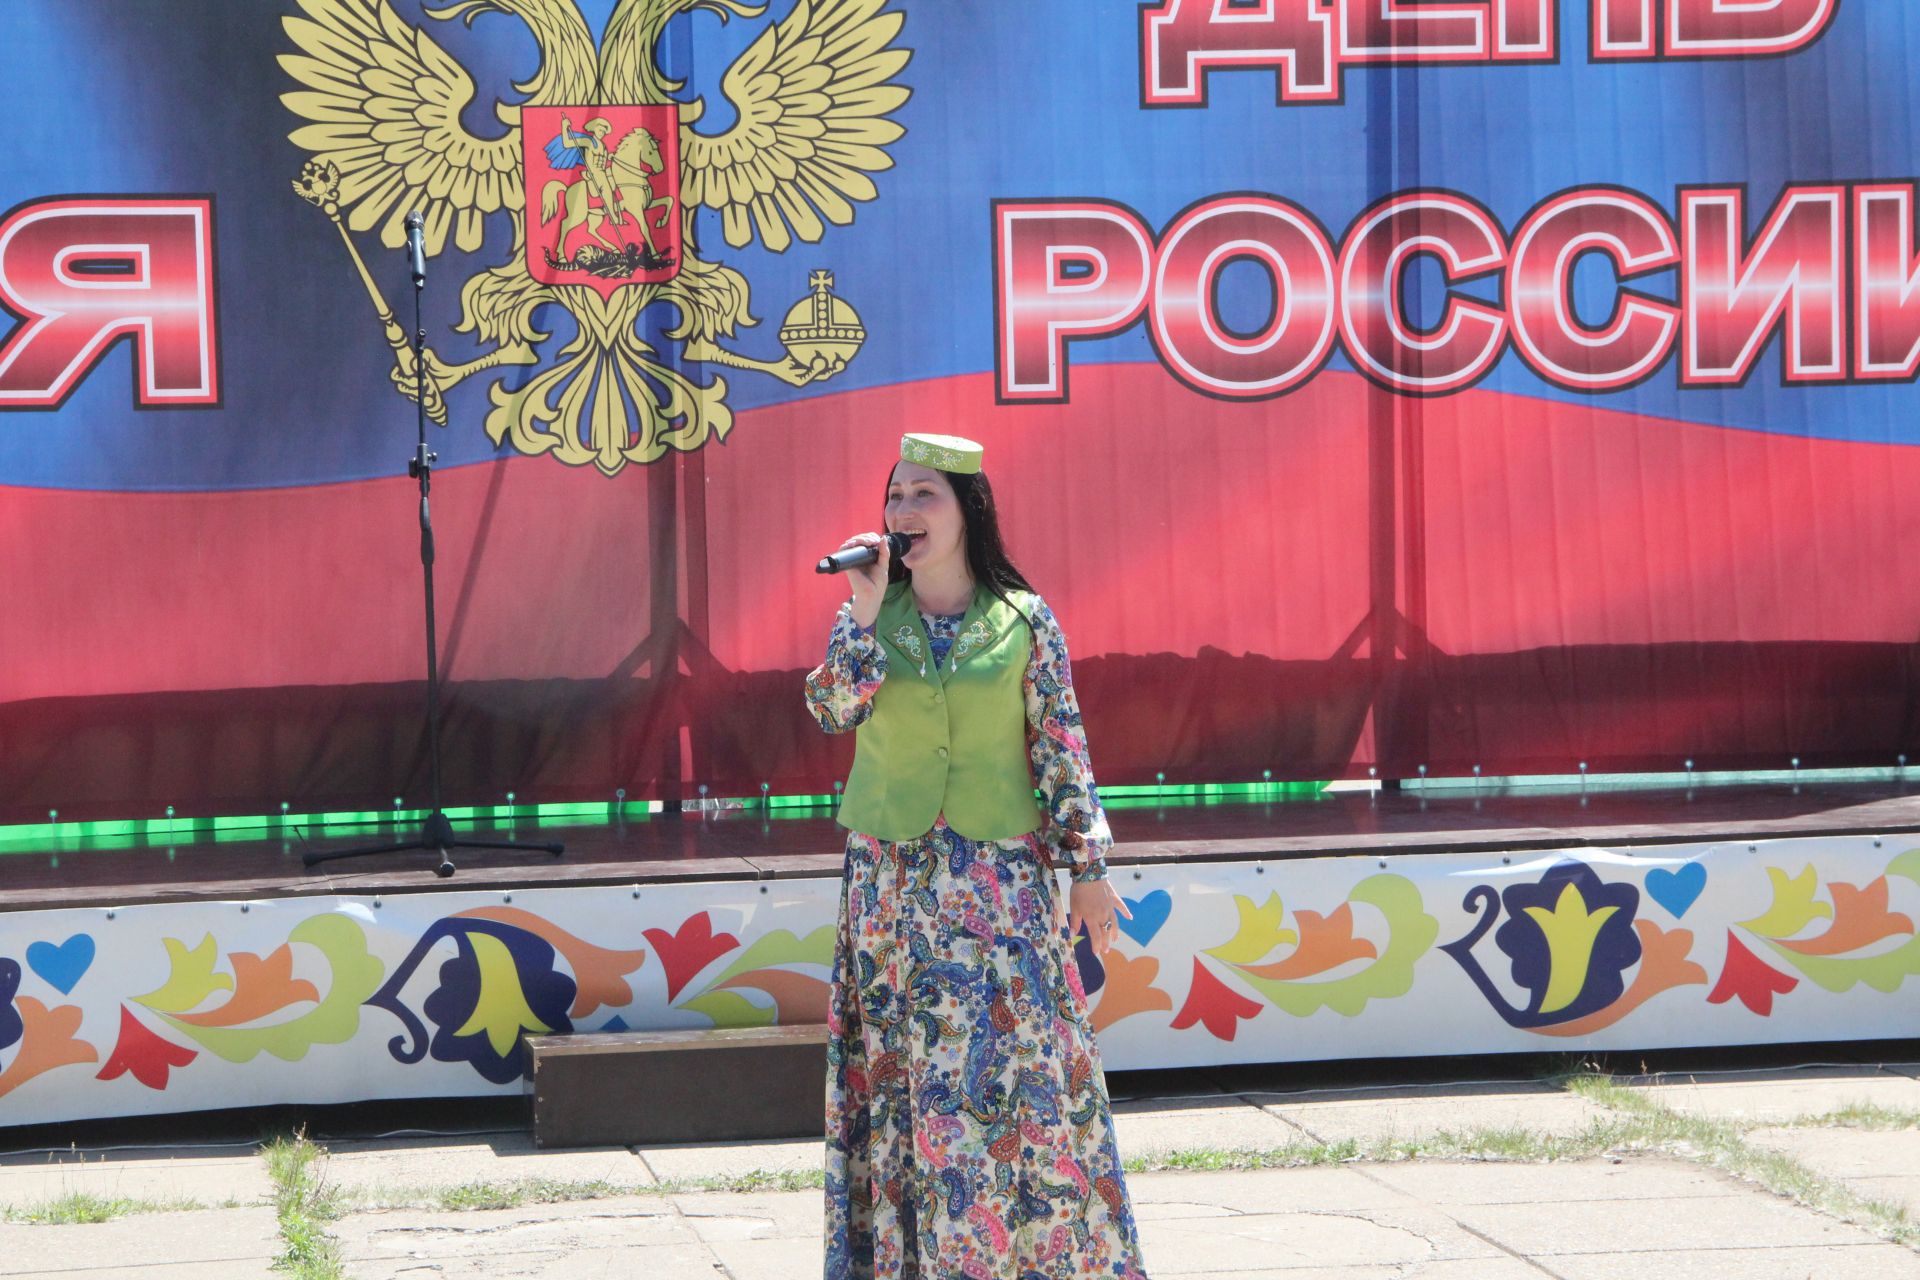 В Болгаре состоялся праздник в честь Дня России (ФОТО)